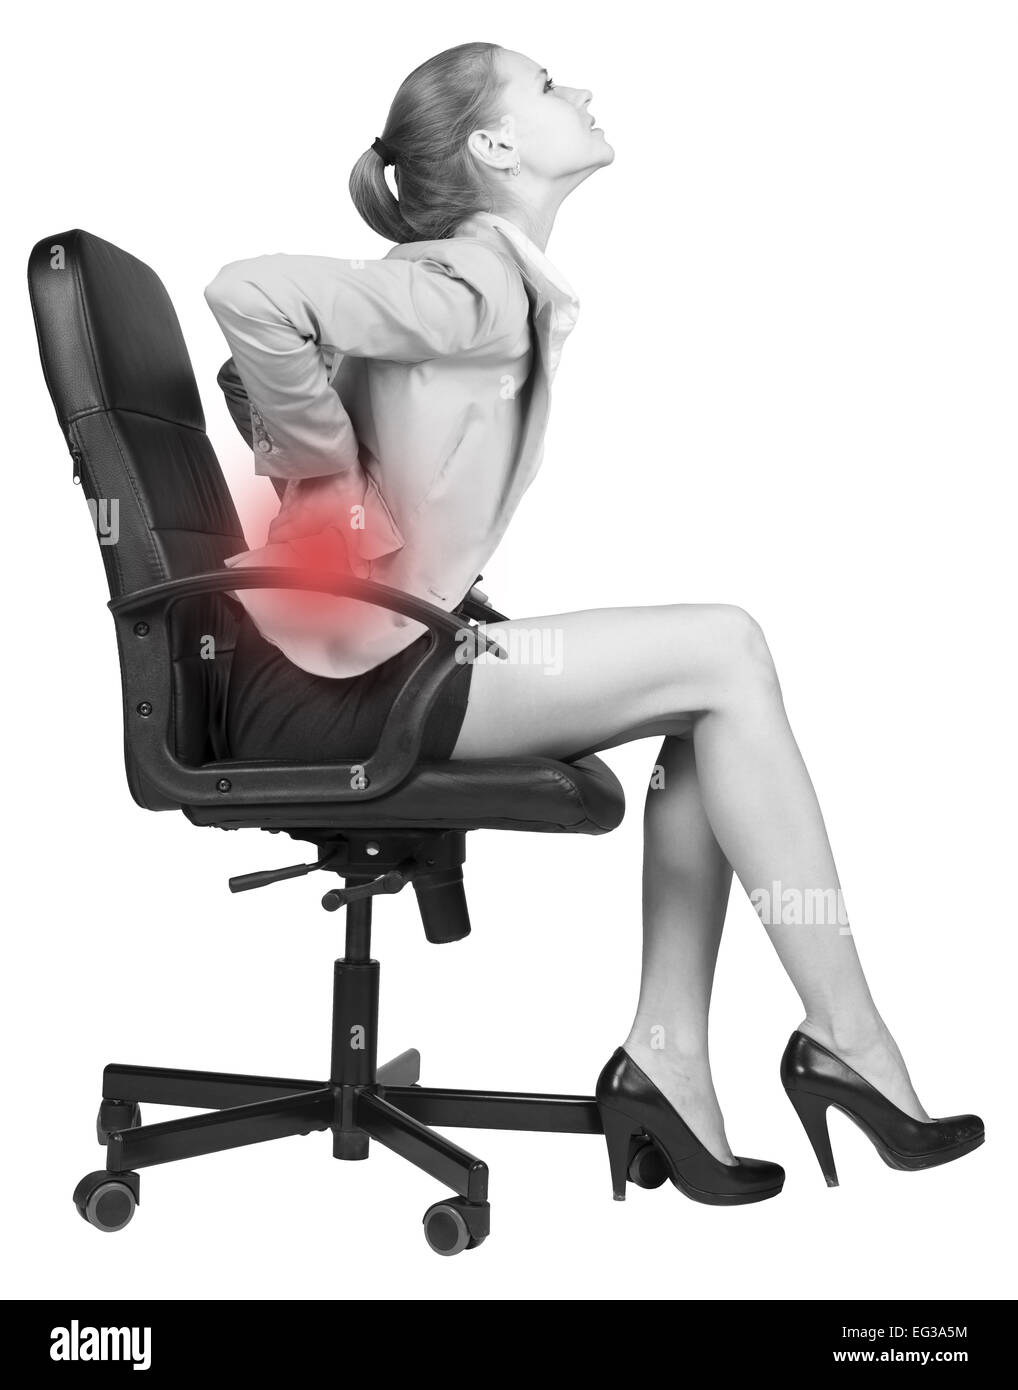 Болезненный стул. Неудобный офисный стул. Человек в компьютерном кресле. Стул для больных позвоночником. Женщина на стуле.